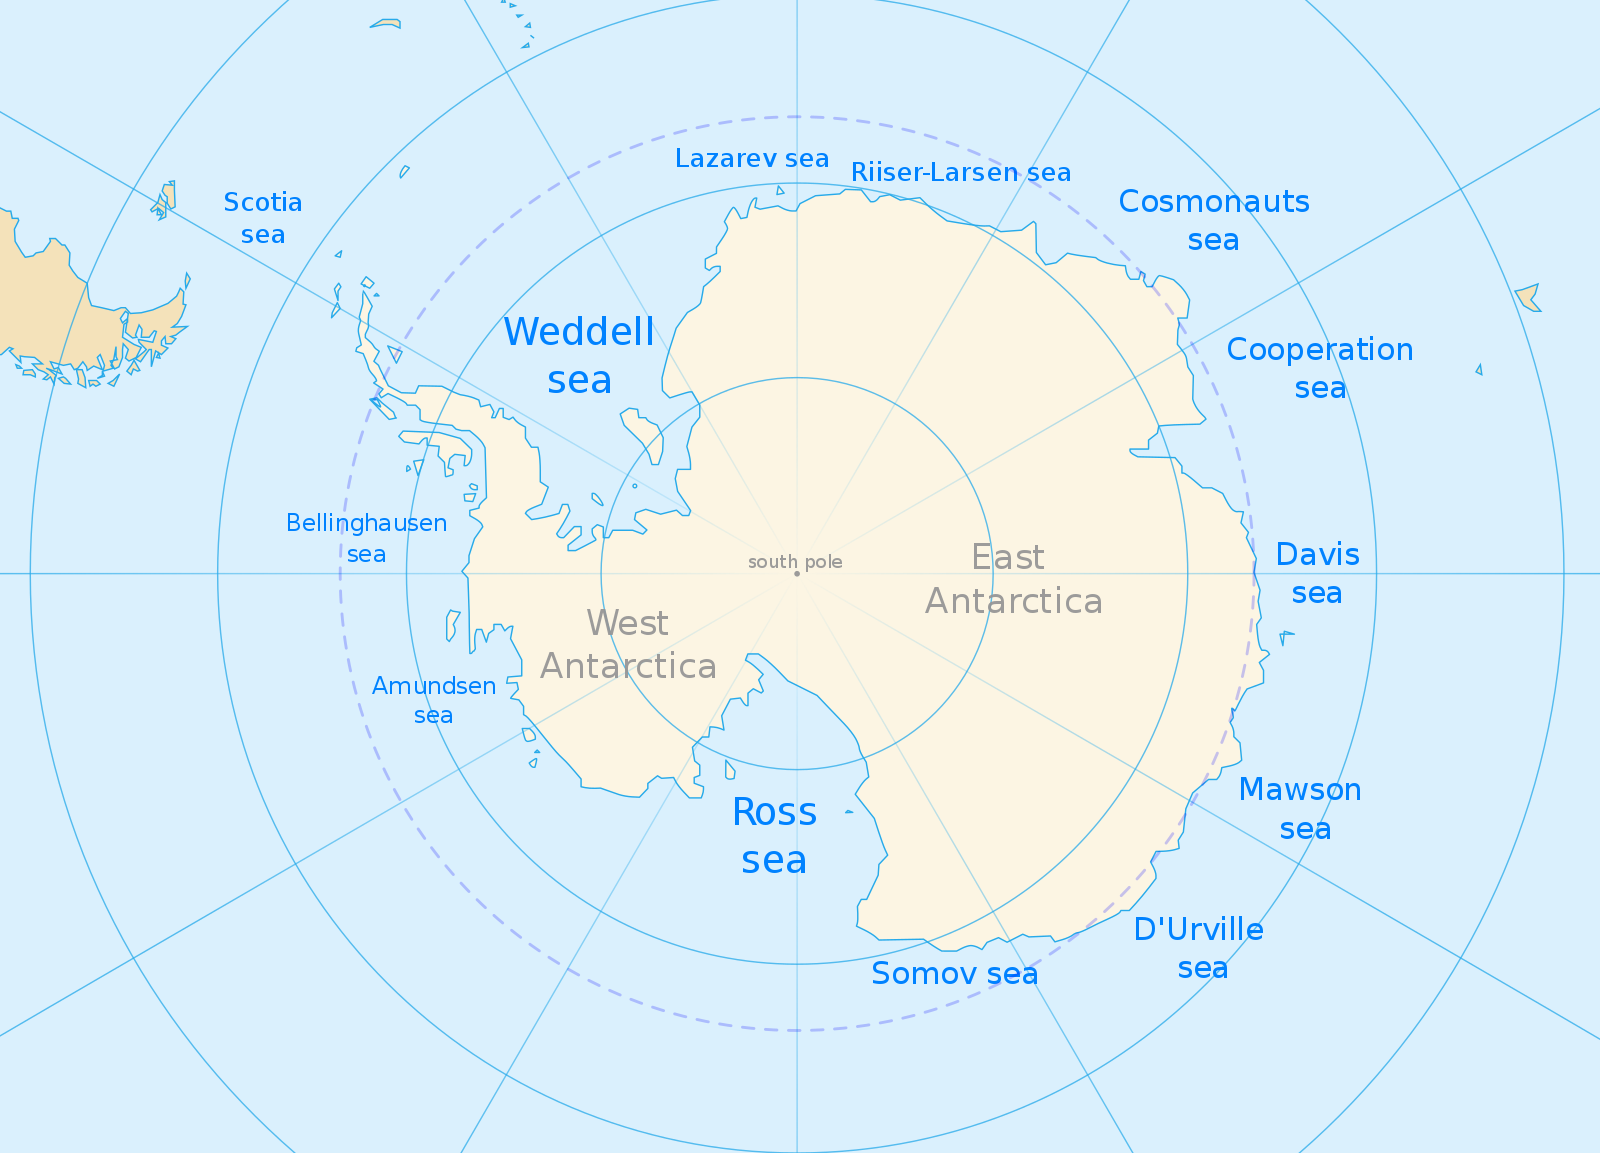 Индийский океан антарктида. Карта Антарктиды моря омывающие Антарктиду. Море Беллинсгаузена — ; море Амундсена —. Море Рисер-Ларсена на карте Антарктиды. Антарктида моря Росса Уэдделла Беллинсгаузена Амундсена.